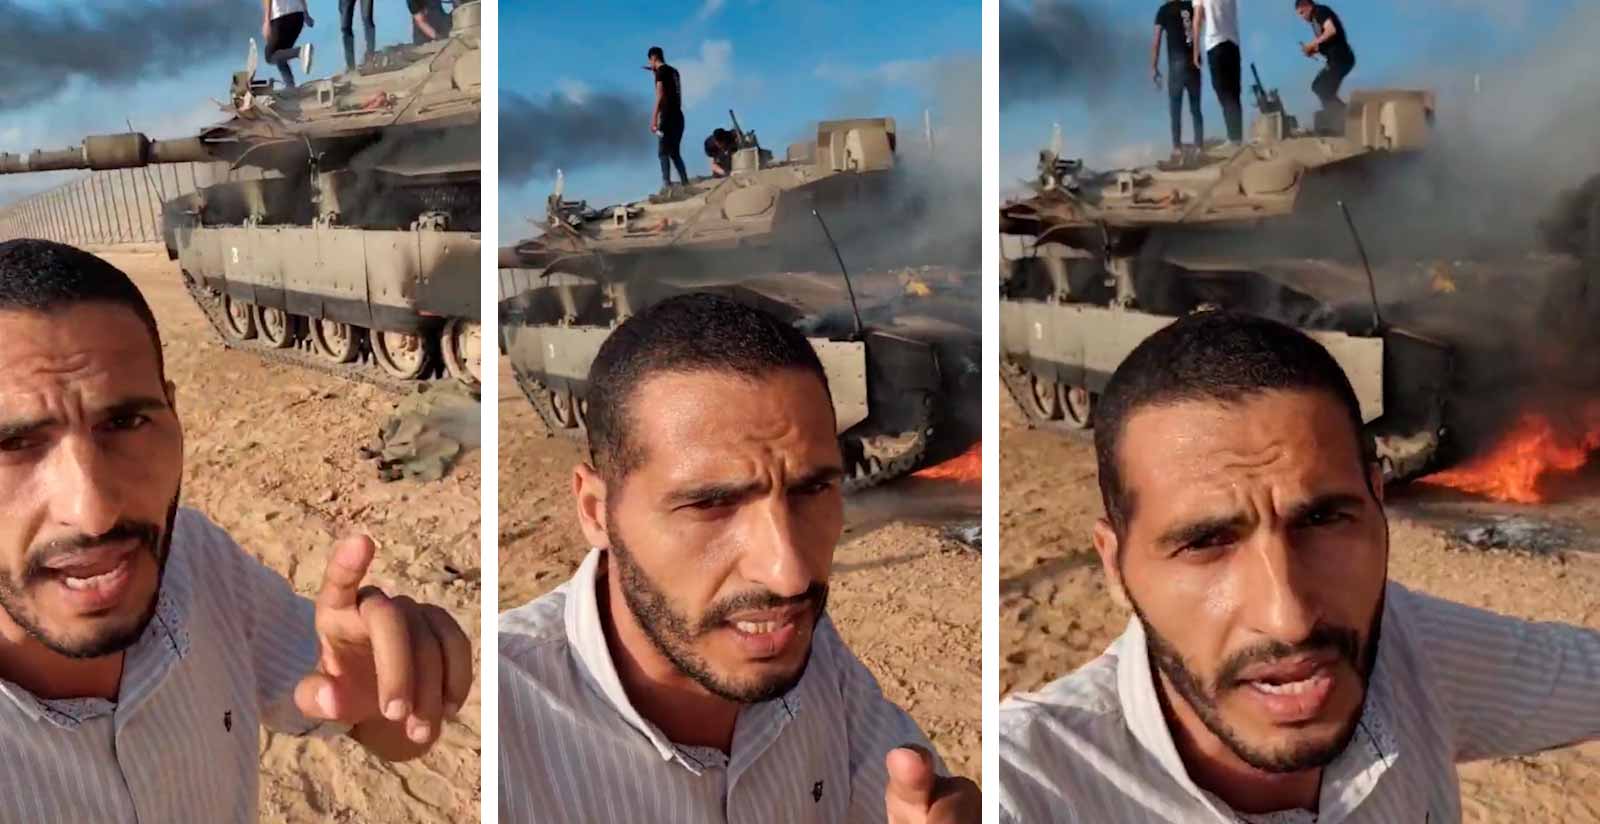 Video viser israelsk Merkava-pansret køretøj i flammer, efter det er blevet ødelagt af palæstinensere. Billede og video: Telegram t.me/SputnikBrasil